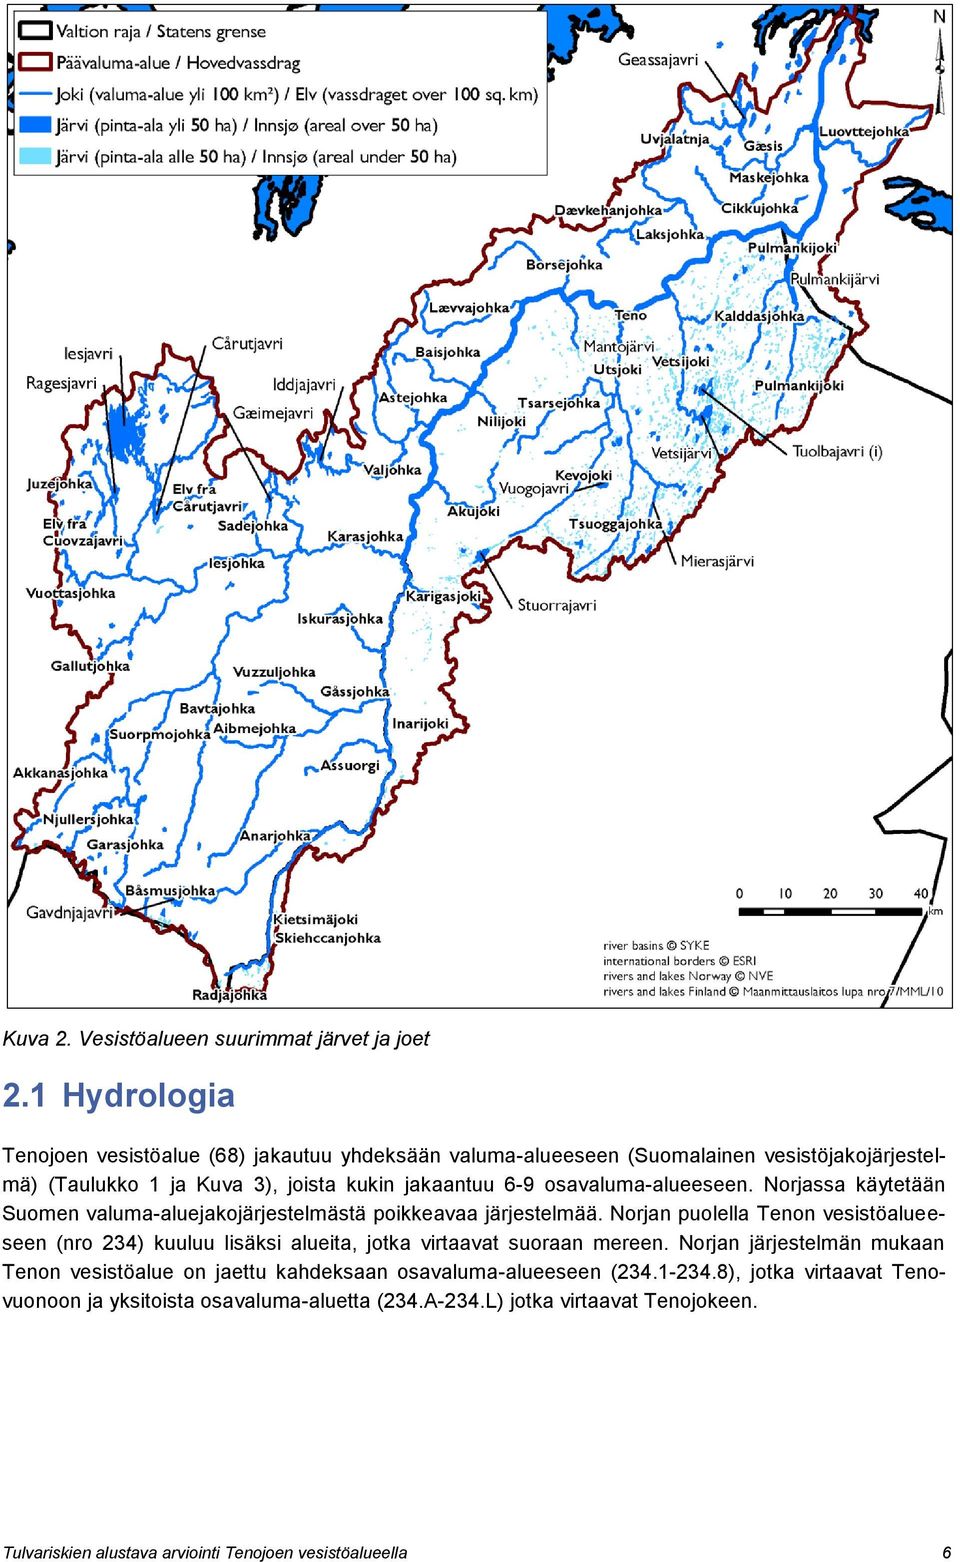 osavaluma-alueeseen. Norjassa käytetään Suomen valuma-aluejakojärjestelmästä poikkeavaa järjestelmää.